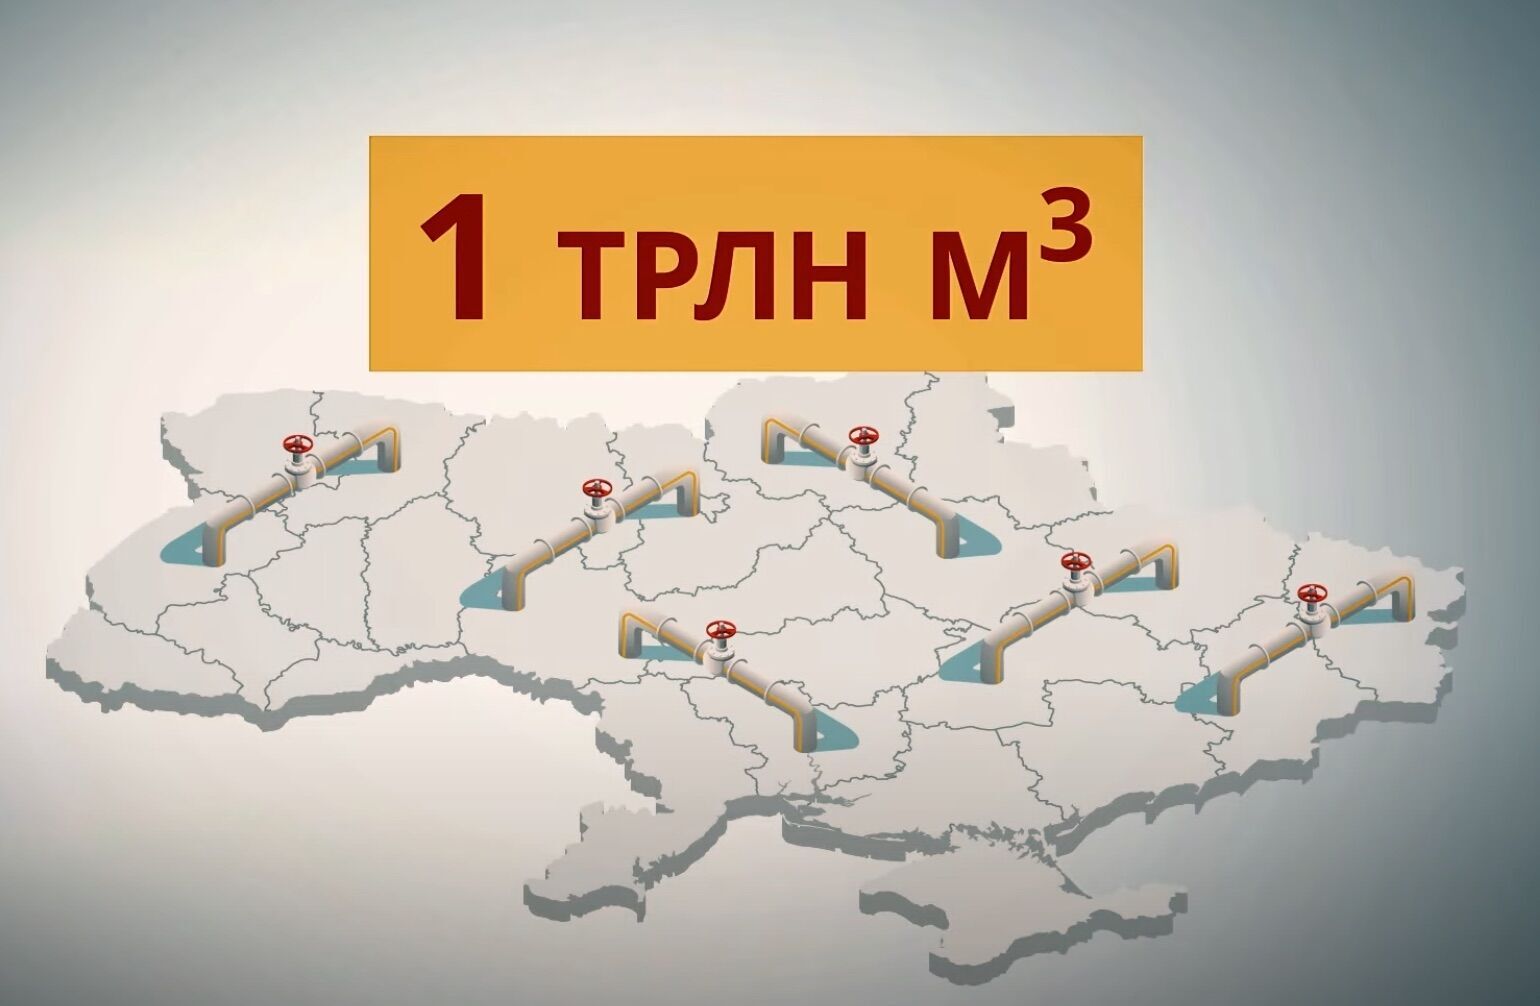 Мощность украинских хранилищ газа достигает триллиона кубометров